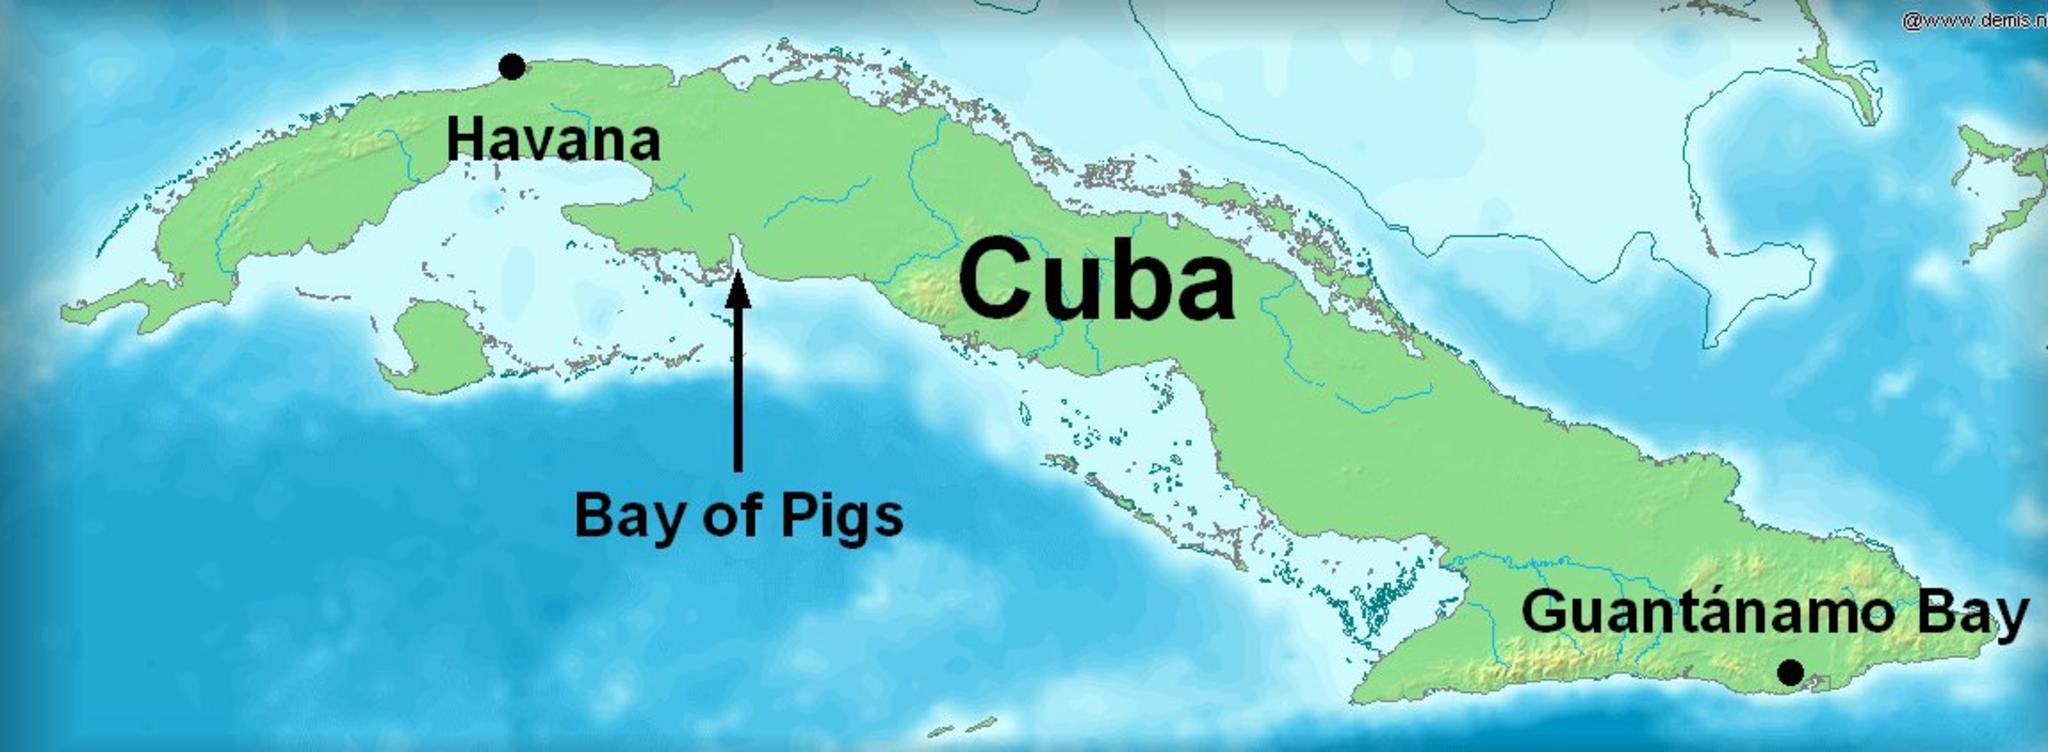 Залив свиней куба. Залив свиней Куба на карте. Хардинес-де-ла-Рейна. Залив свиней на Кубе. Операция в заливе свиней на Кубе.